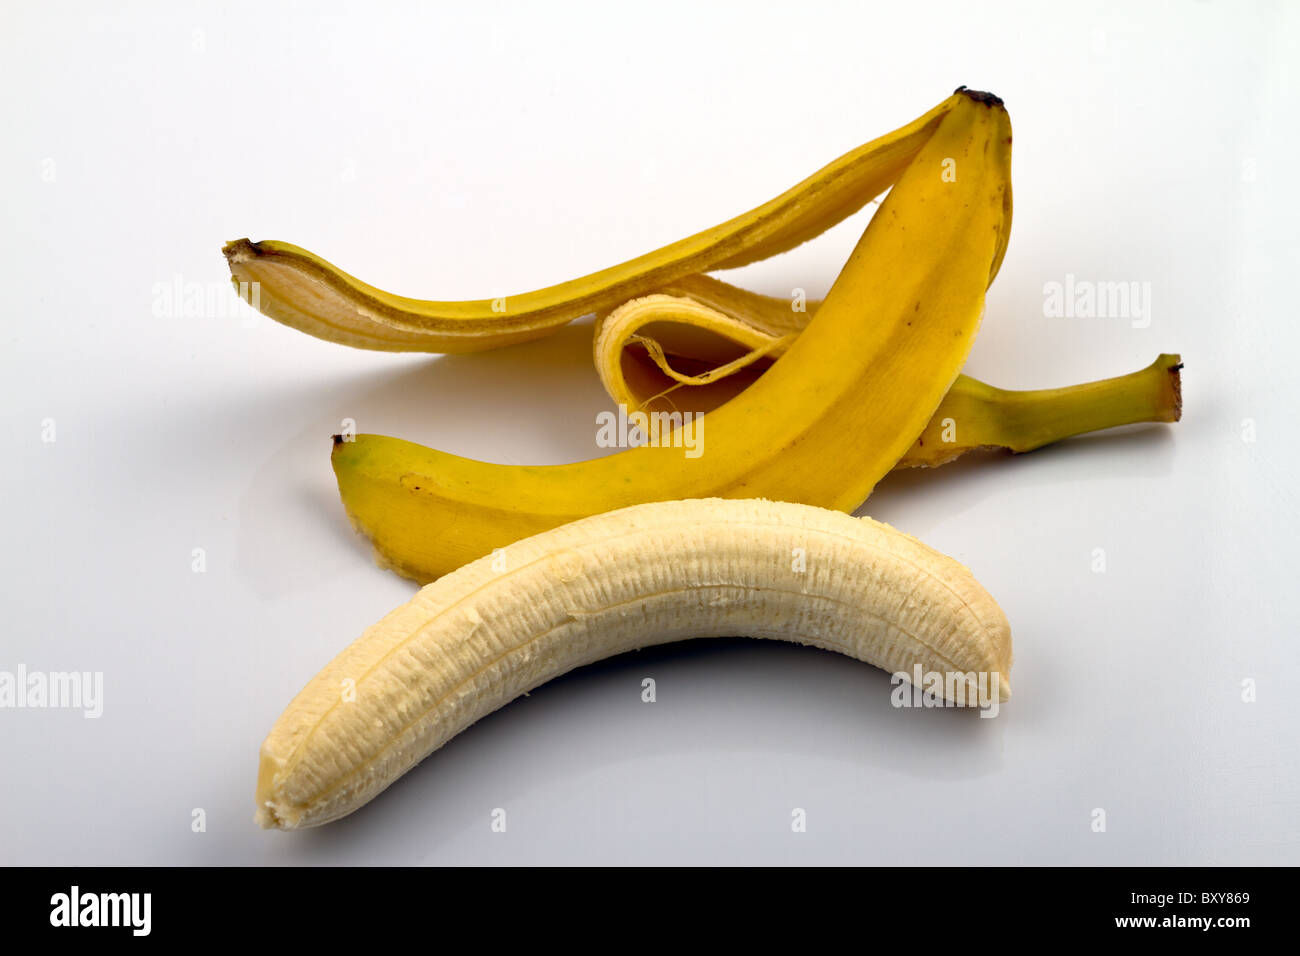 Ein Loch geschälte Banane liegen neben seiner Schale Stockfotografie - Alamy